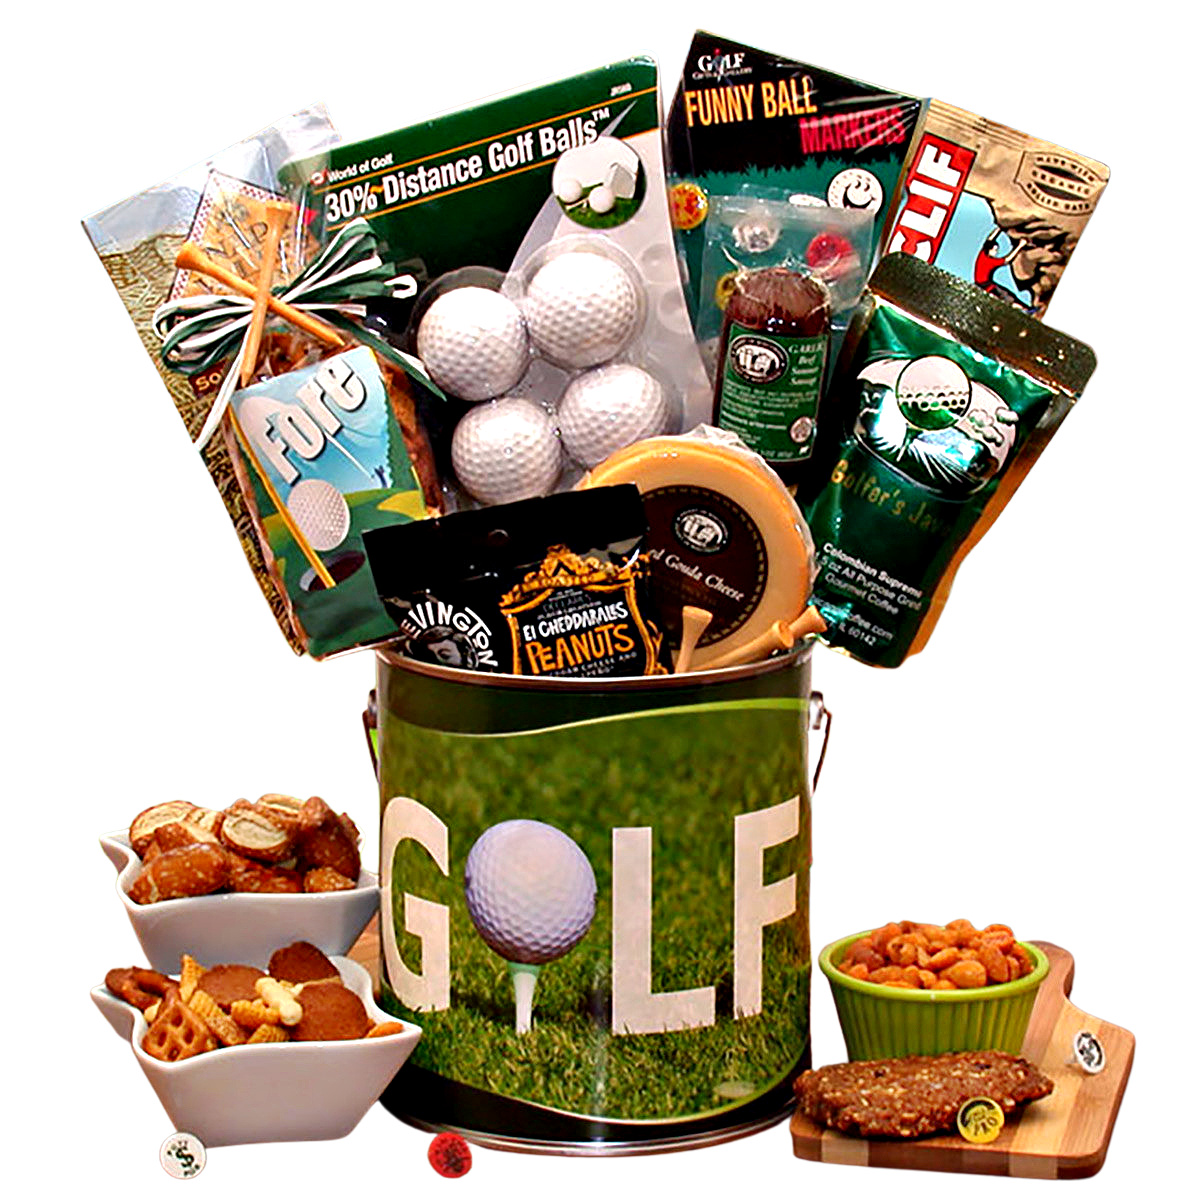 https://images.adorablegiftbaskets.com/media/fore-golf-gift-basket.jpg